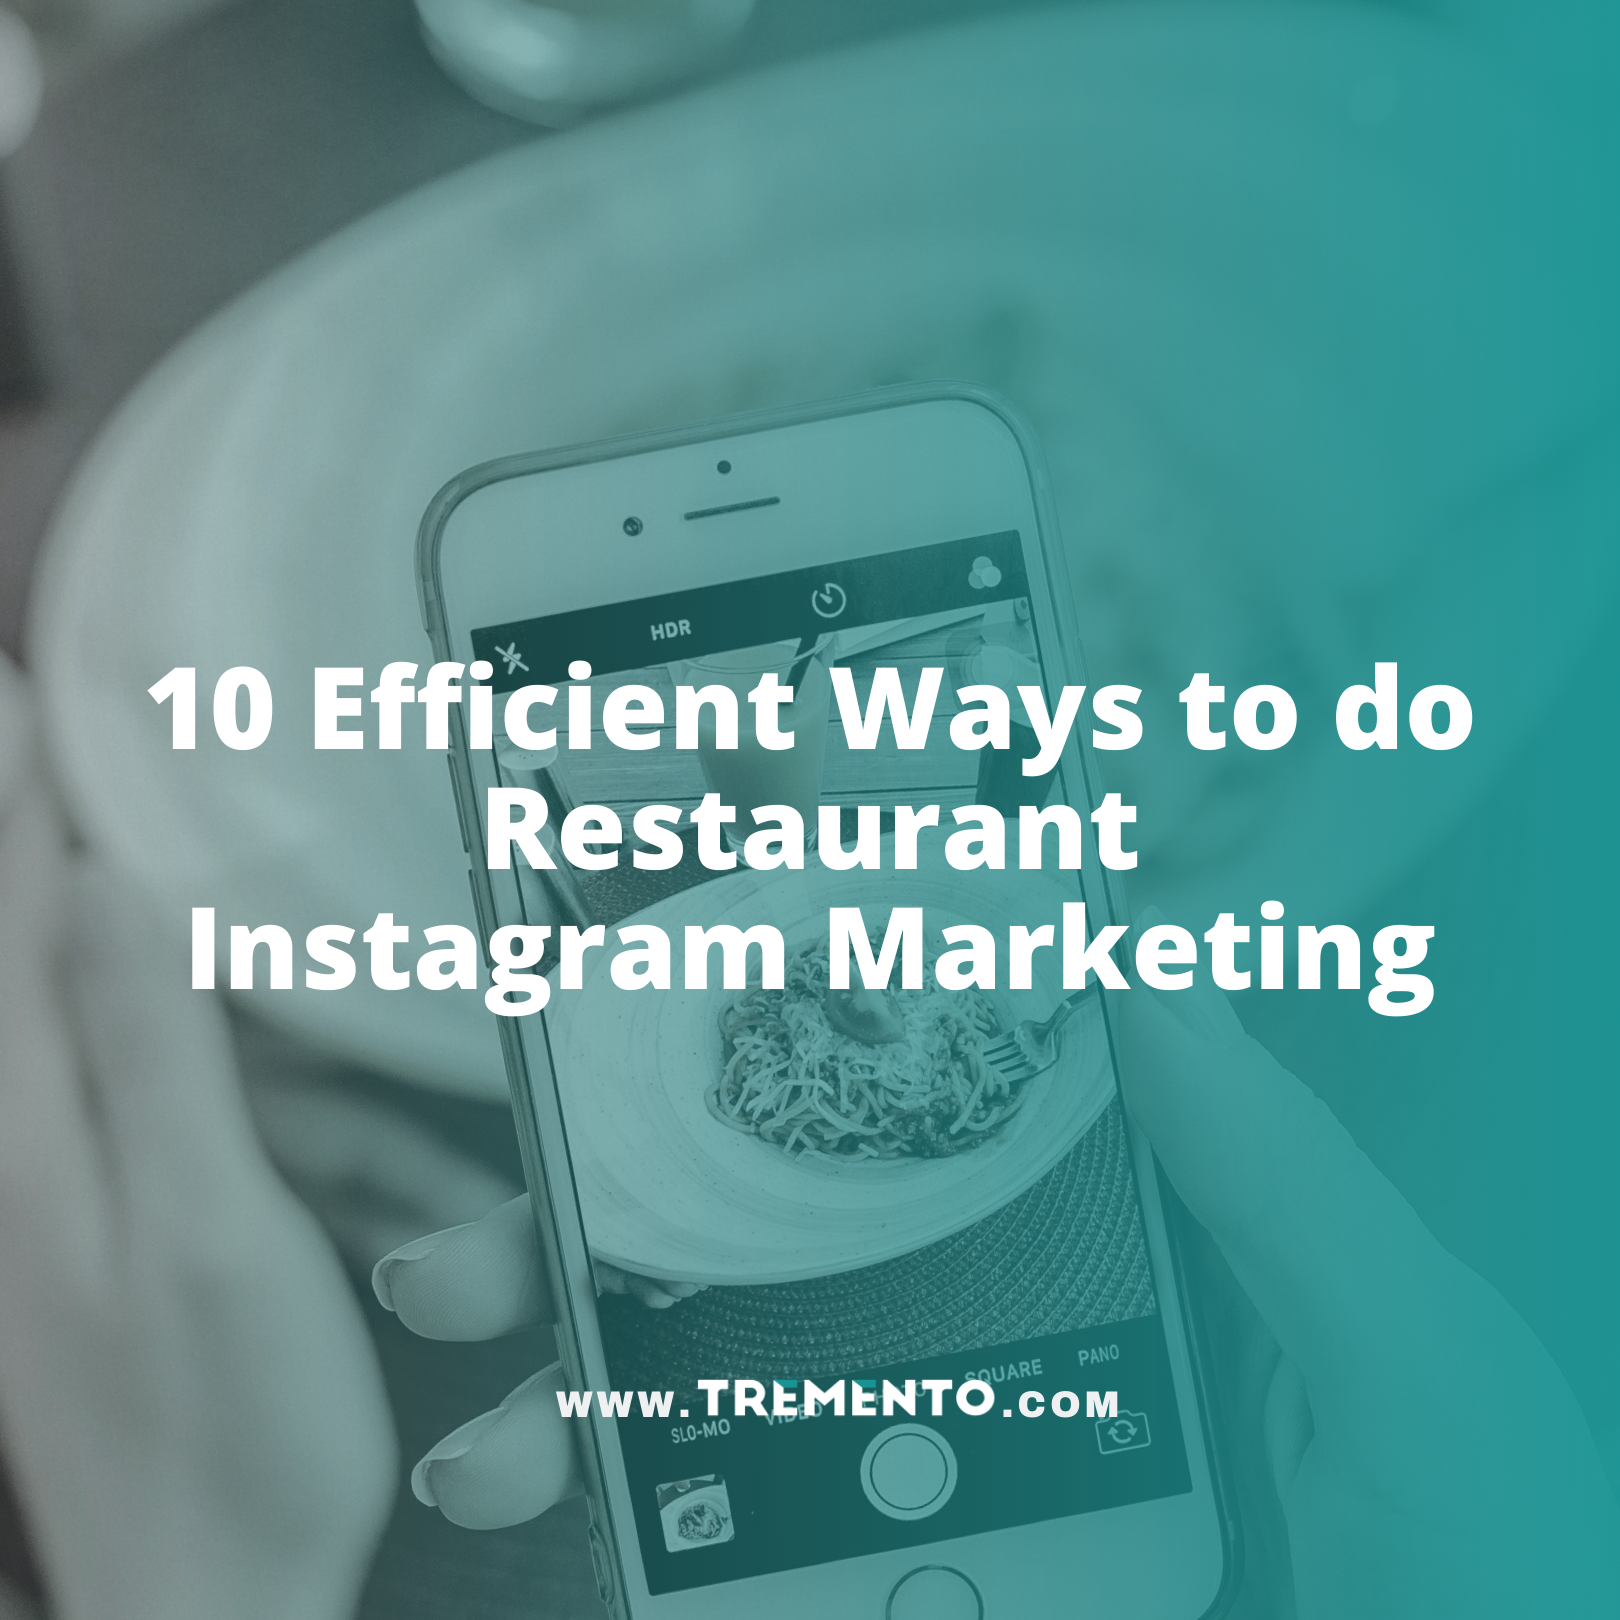 10 Efficient Ways to do Restaurant Instagram Marketing